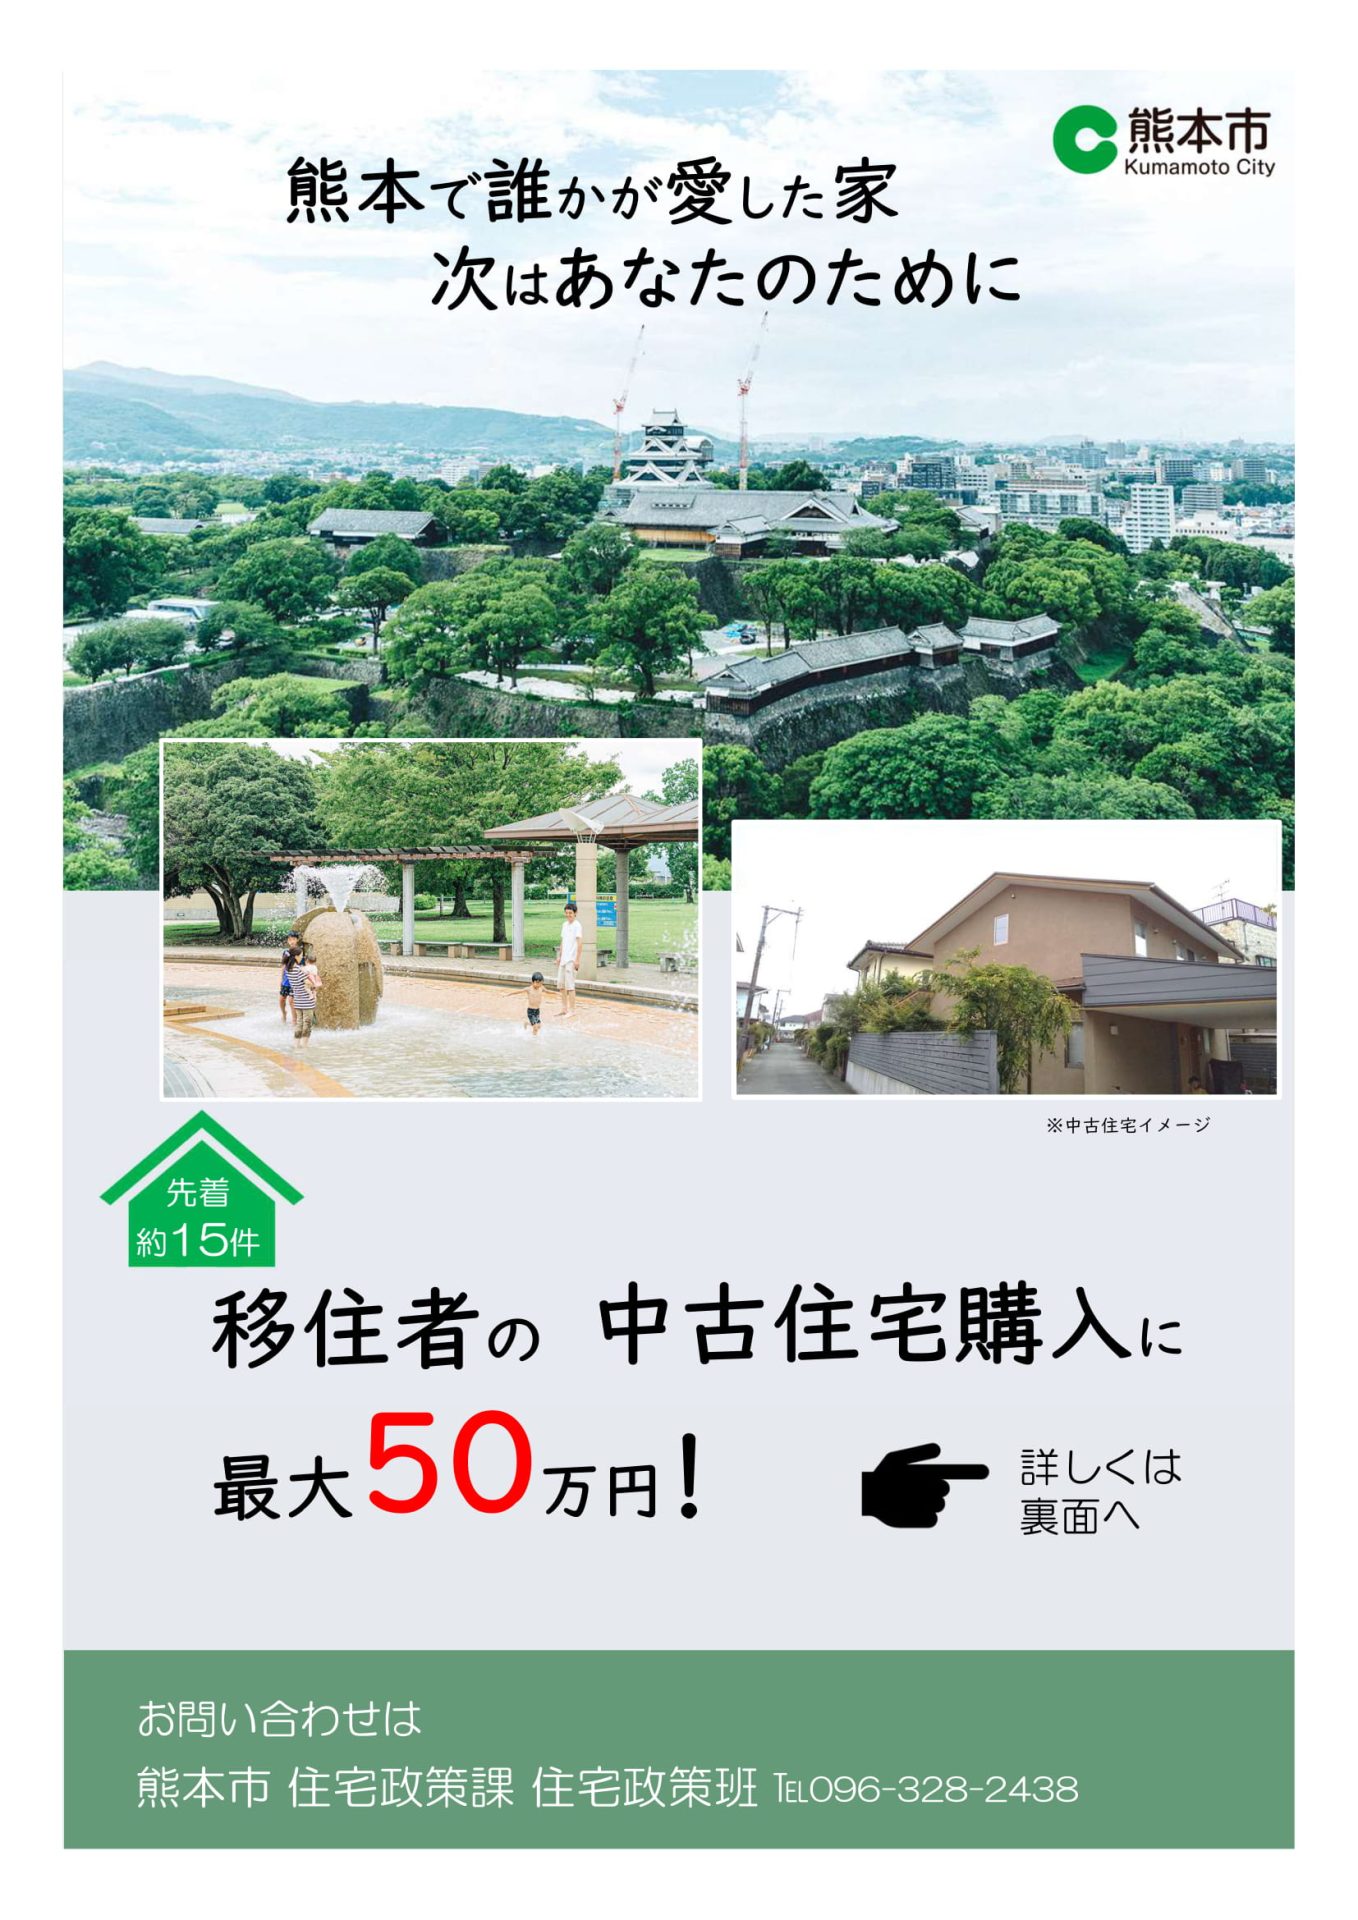 【熊本市】移住者向け中古住宅購入補助金について | 地域のトピックス